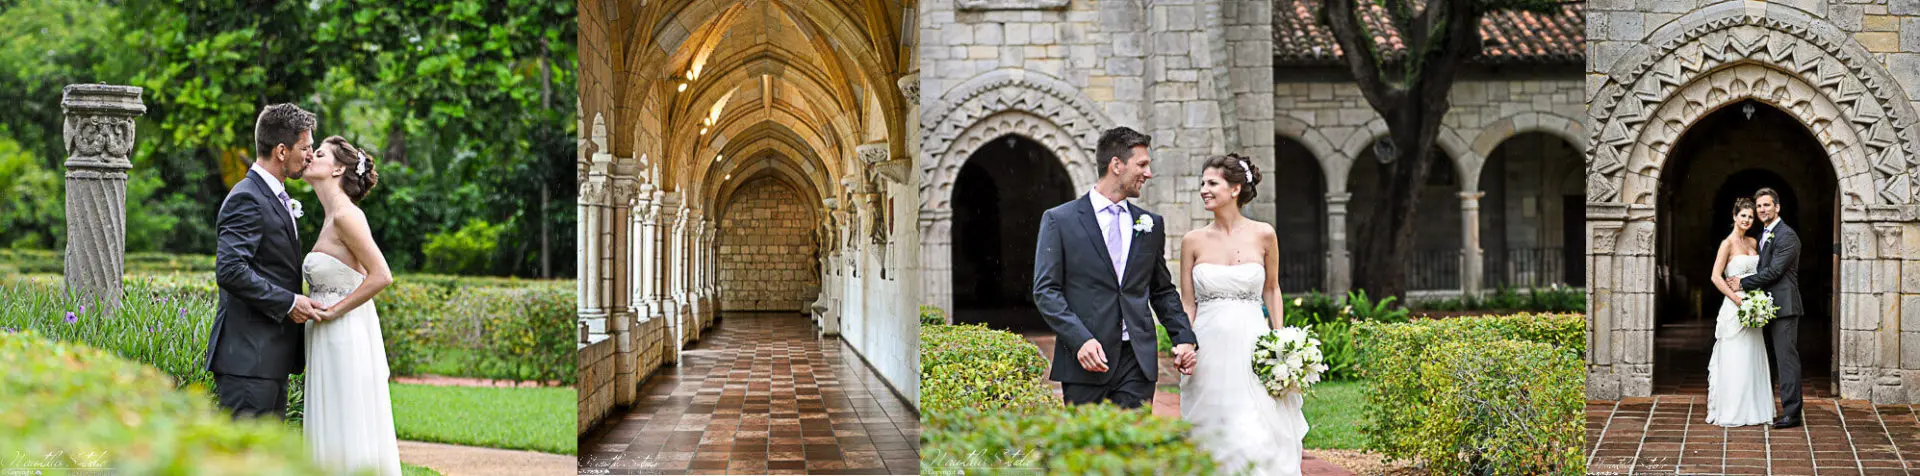 Heiraten in Kapelle in Florida, Fotos vor dem Spanischen Kloster in Miami